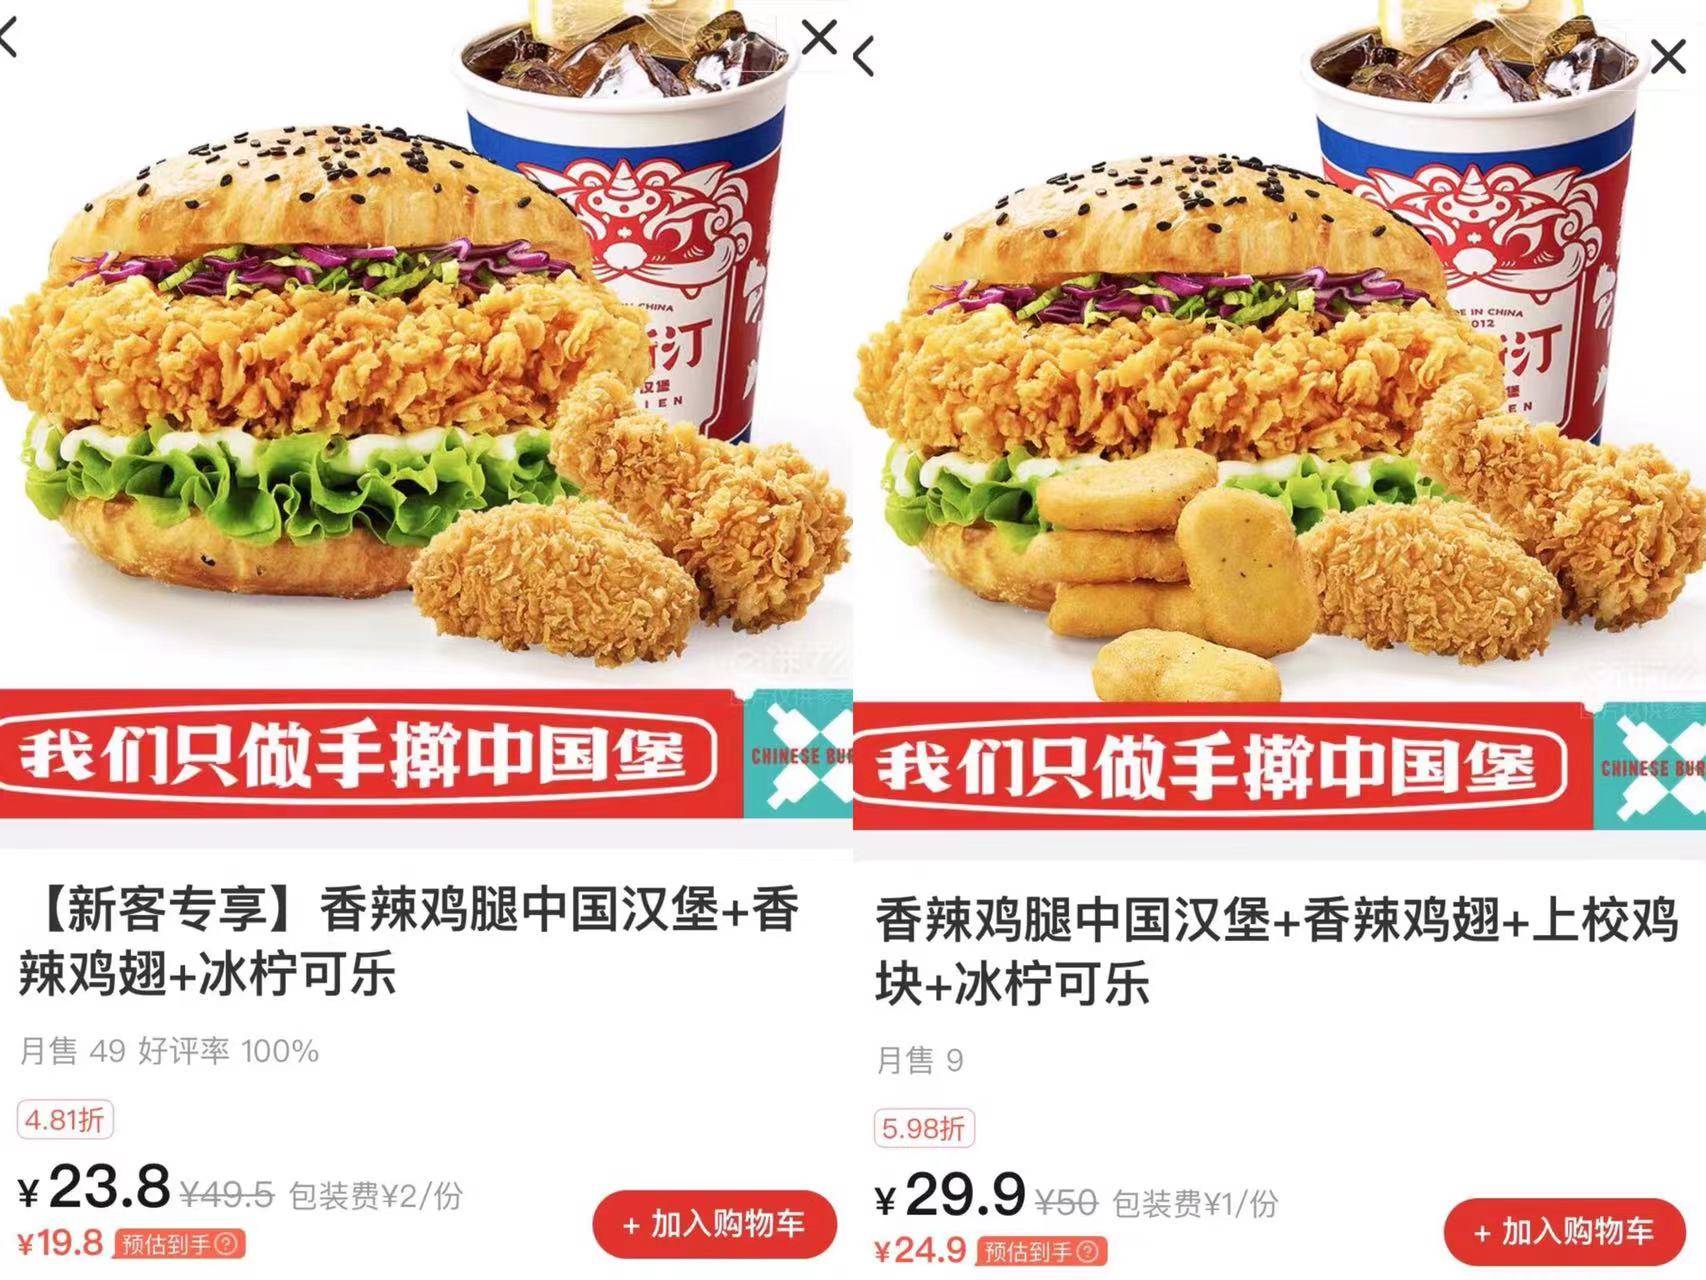 tas15 - In 2 anni sono stati aperti più di 2.000 hamburger in stile cinese, possono accaparrarsi i siti di McDonald’s e KFC?